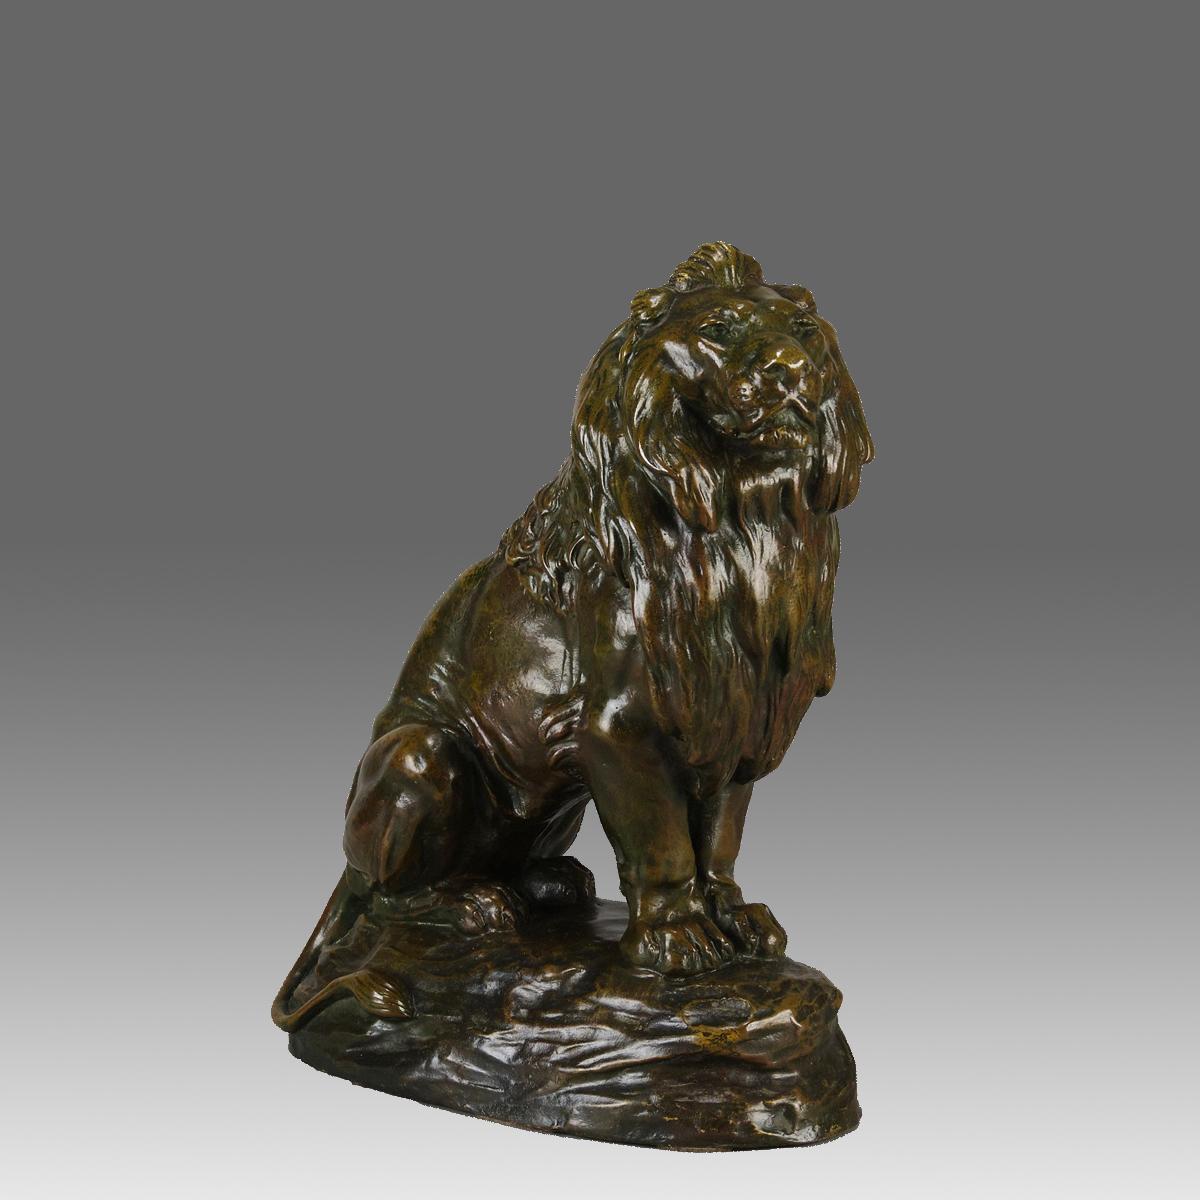 Majestätische französische Animalier-Bronzestudie eines sitzenden Löwen aus dem frühen 20. Jahrhundert mit hervorragender grüner und herbstlicher Patinierung und sehr feinen handziselierten Oberflächendetails.  Signiert C.Masson, gestempelt und